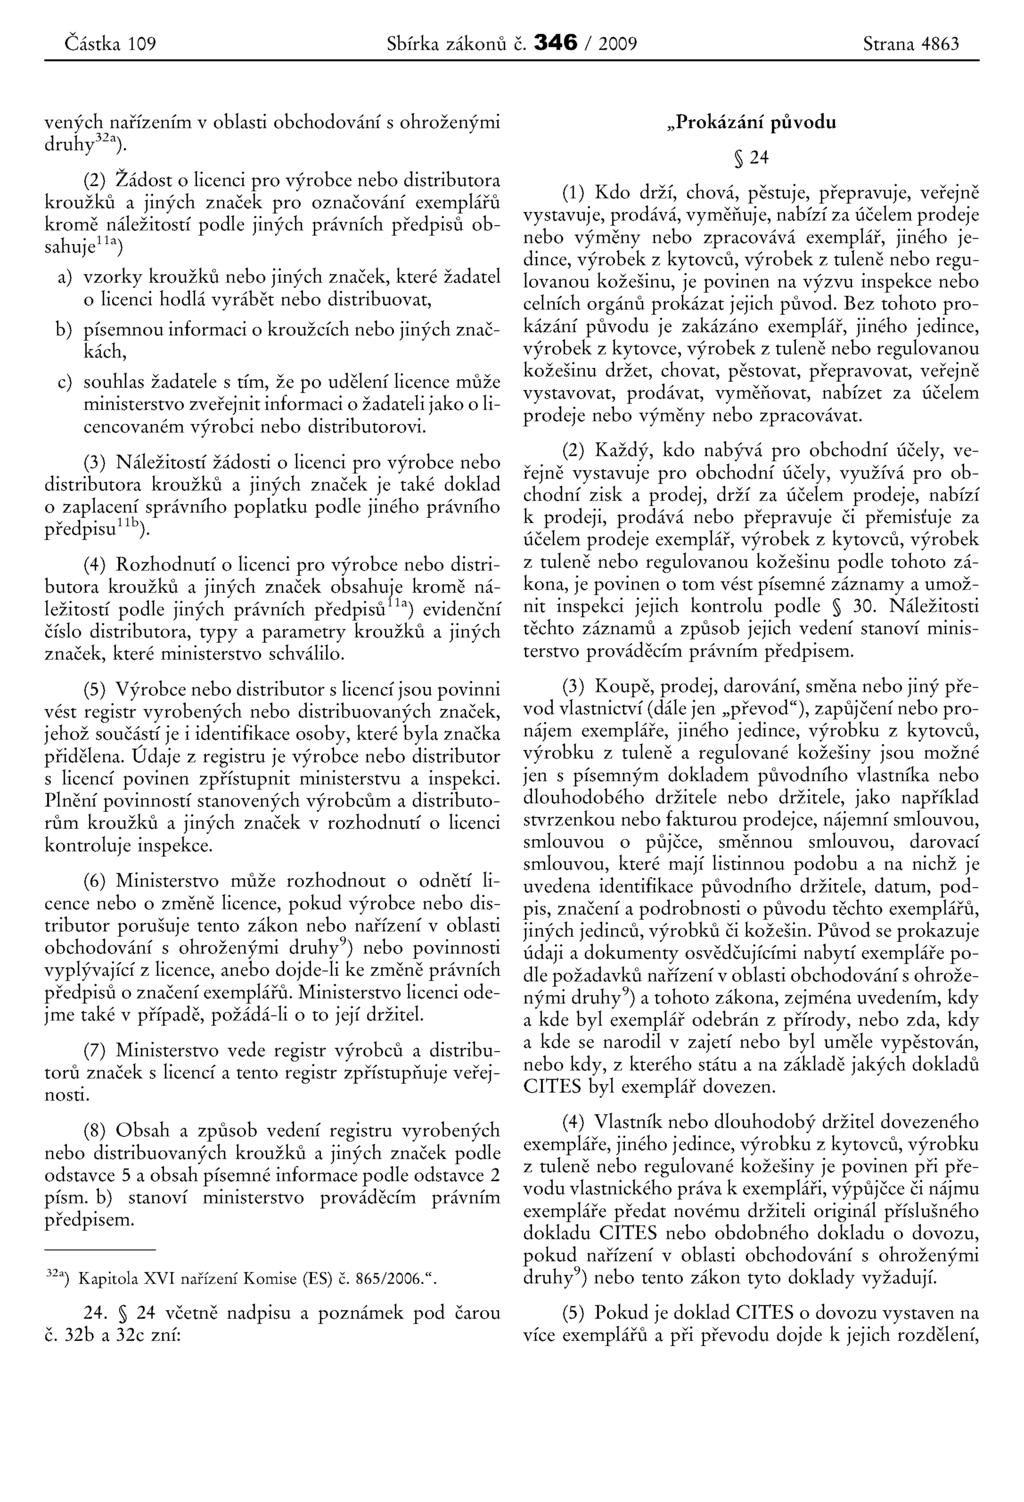 Castka 109 Sbfrka zakonu c. 346 / 2009 Strana 4863 venych naifzenim v oblasti obchodovani s ohrozenyrni druh y 32a).